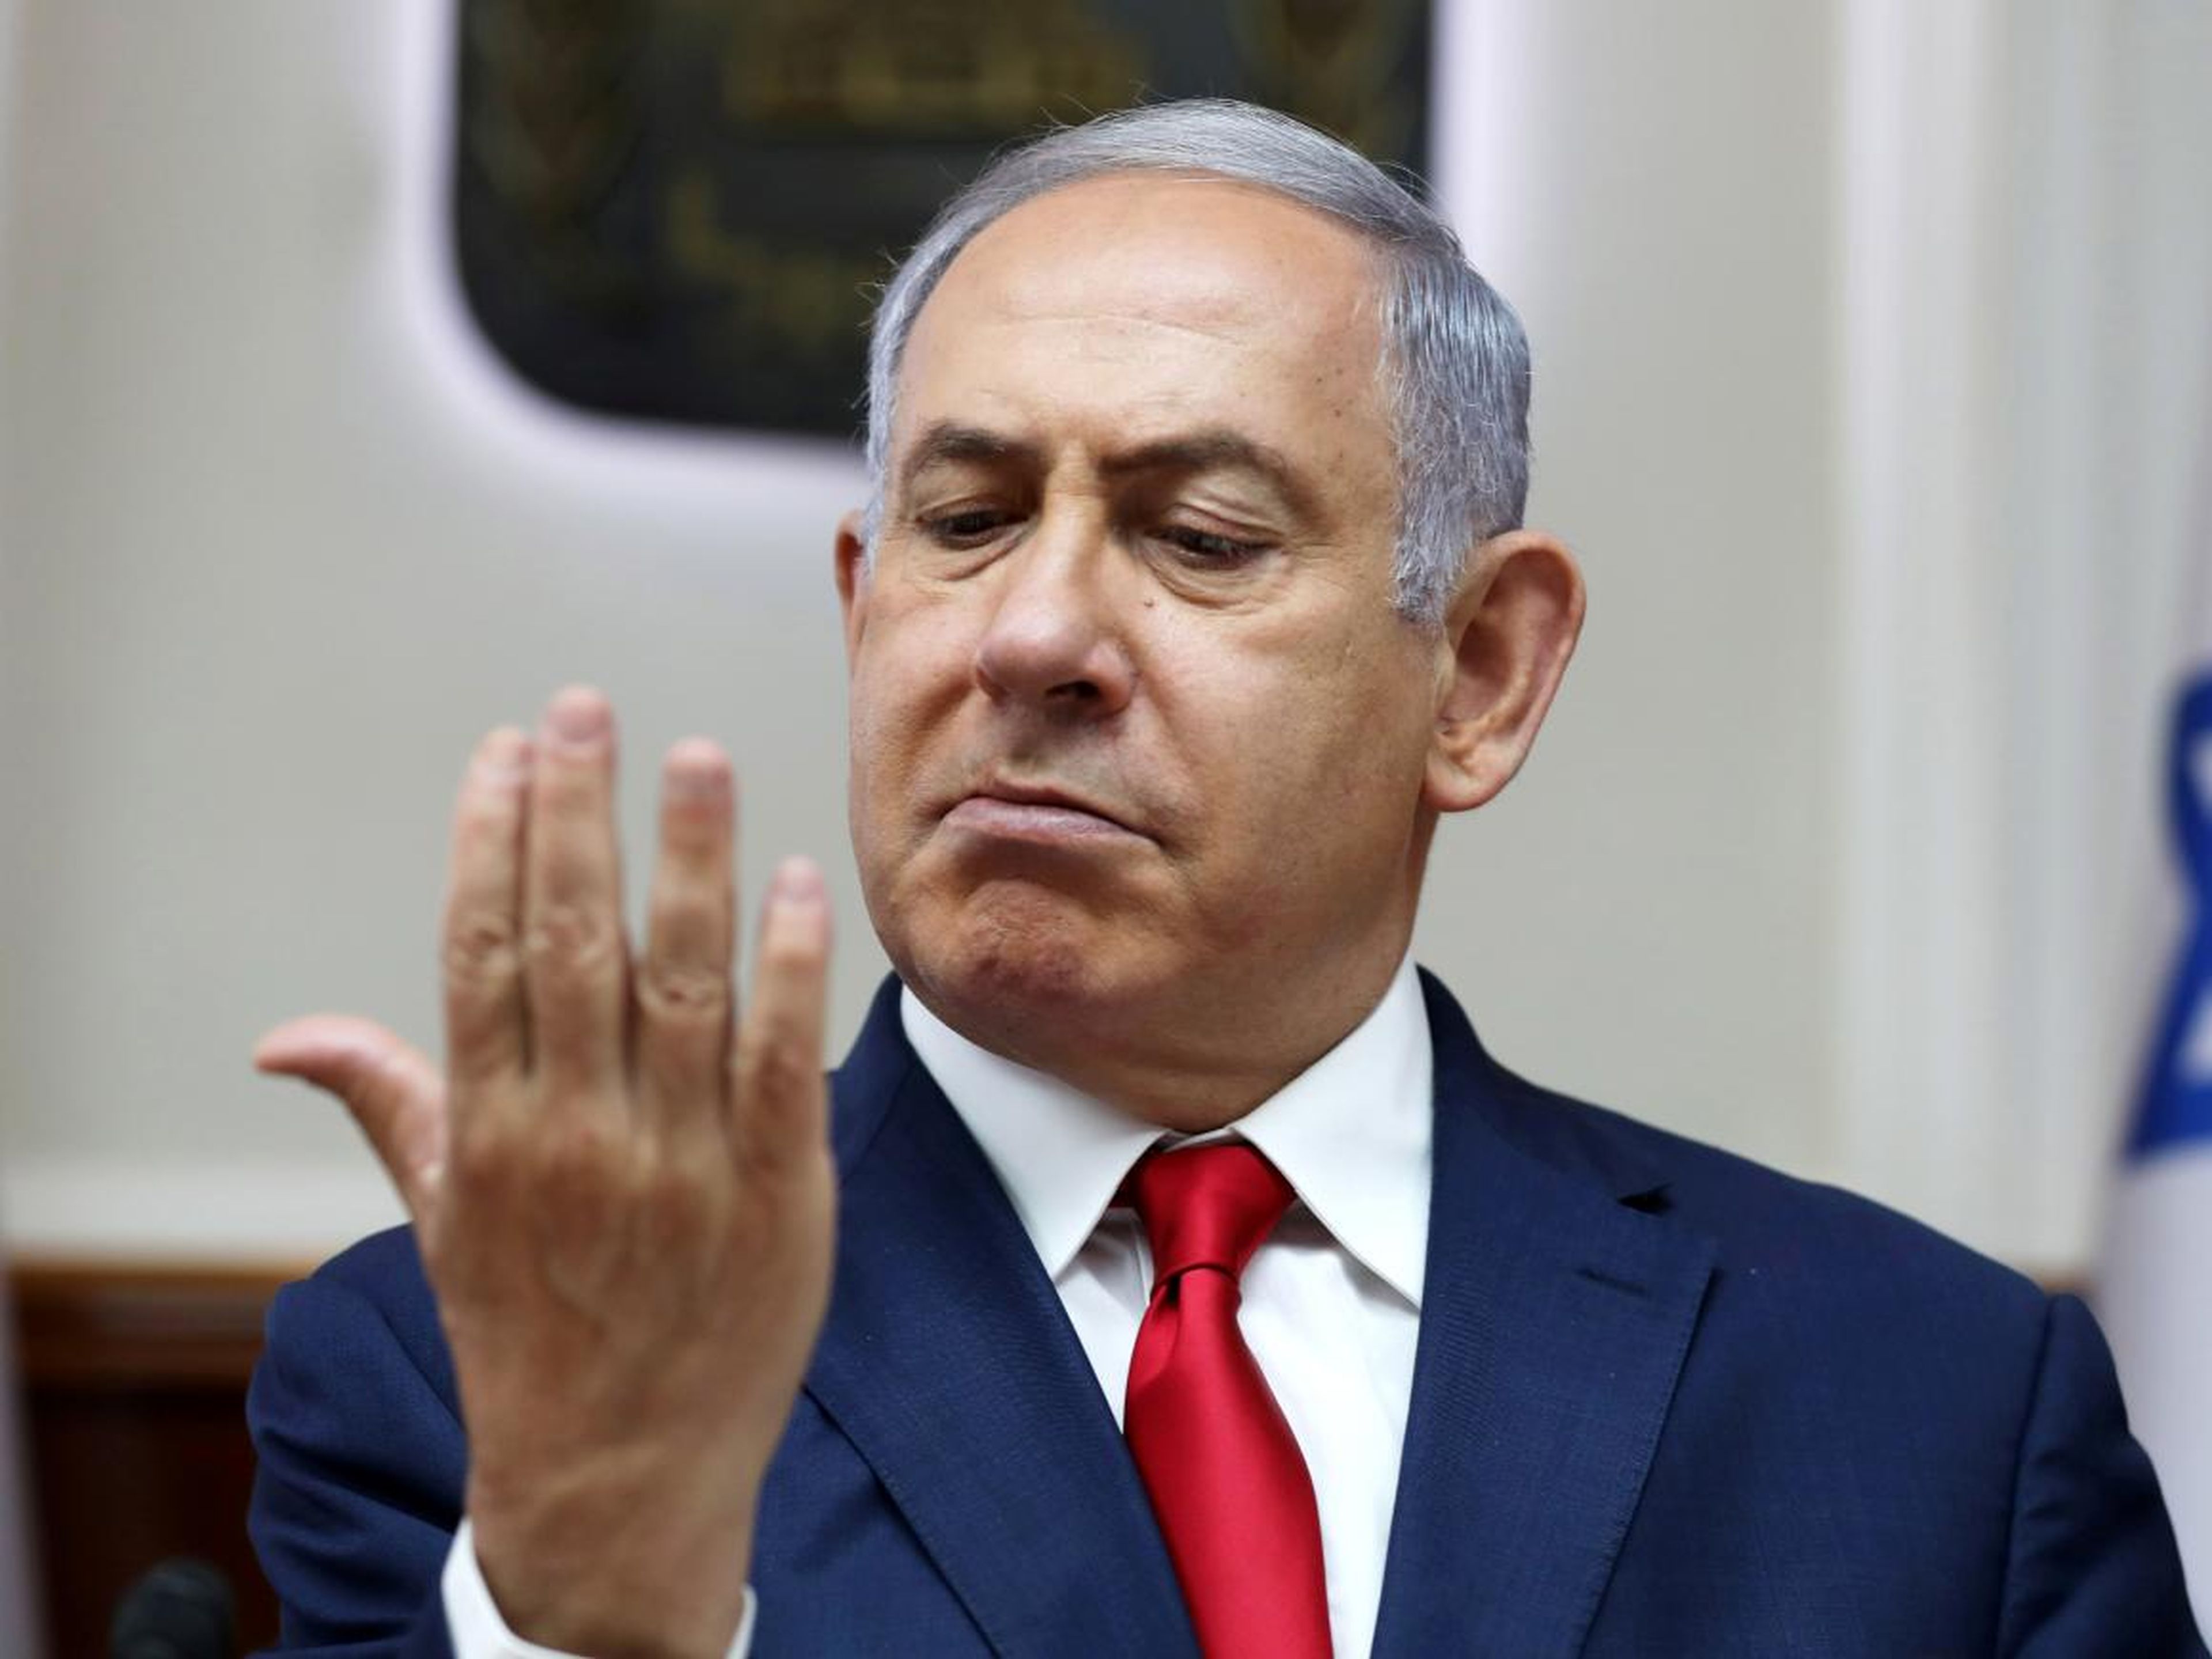 Israeli Prime Minister Benjamin Netanyahu in Jerusalem in July 2019.